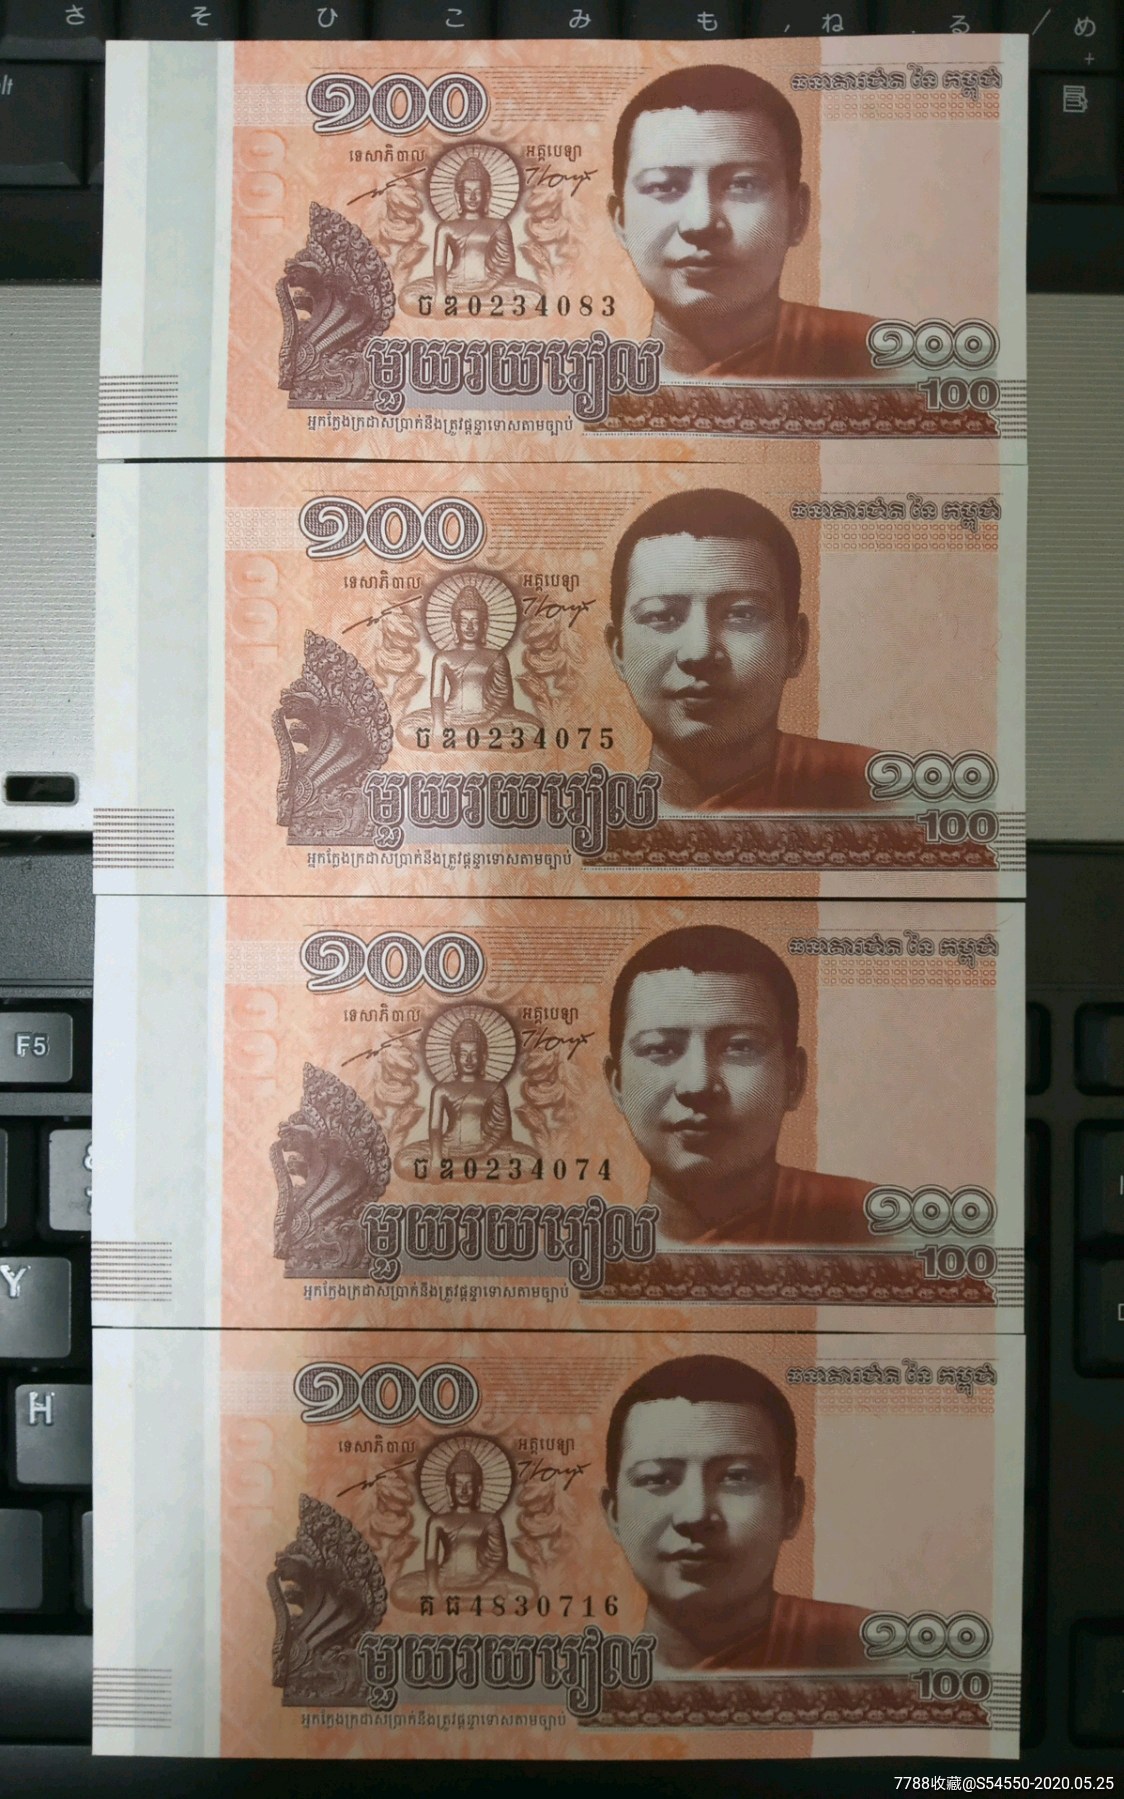 100柬埔寨币-图库-五毛网